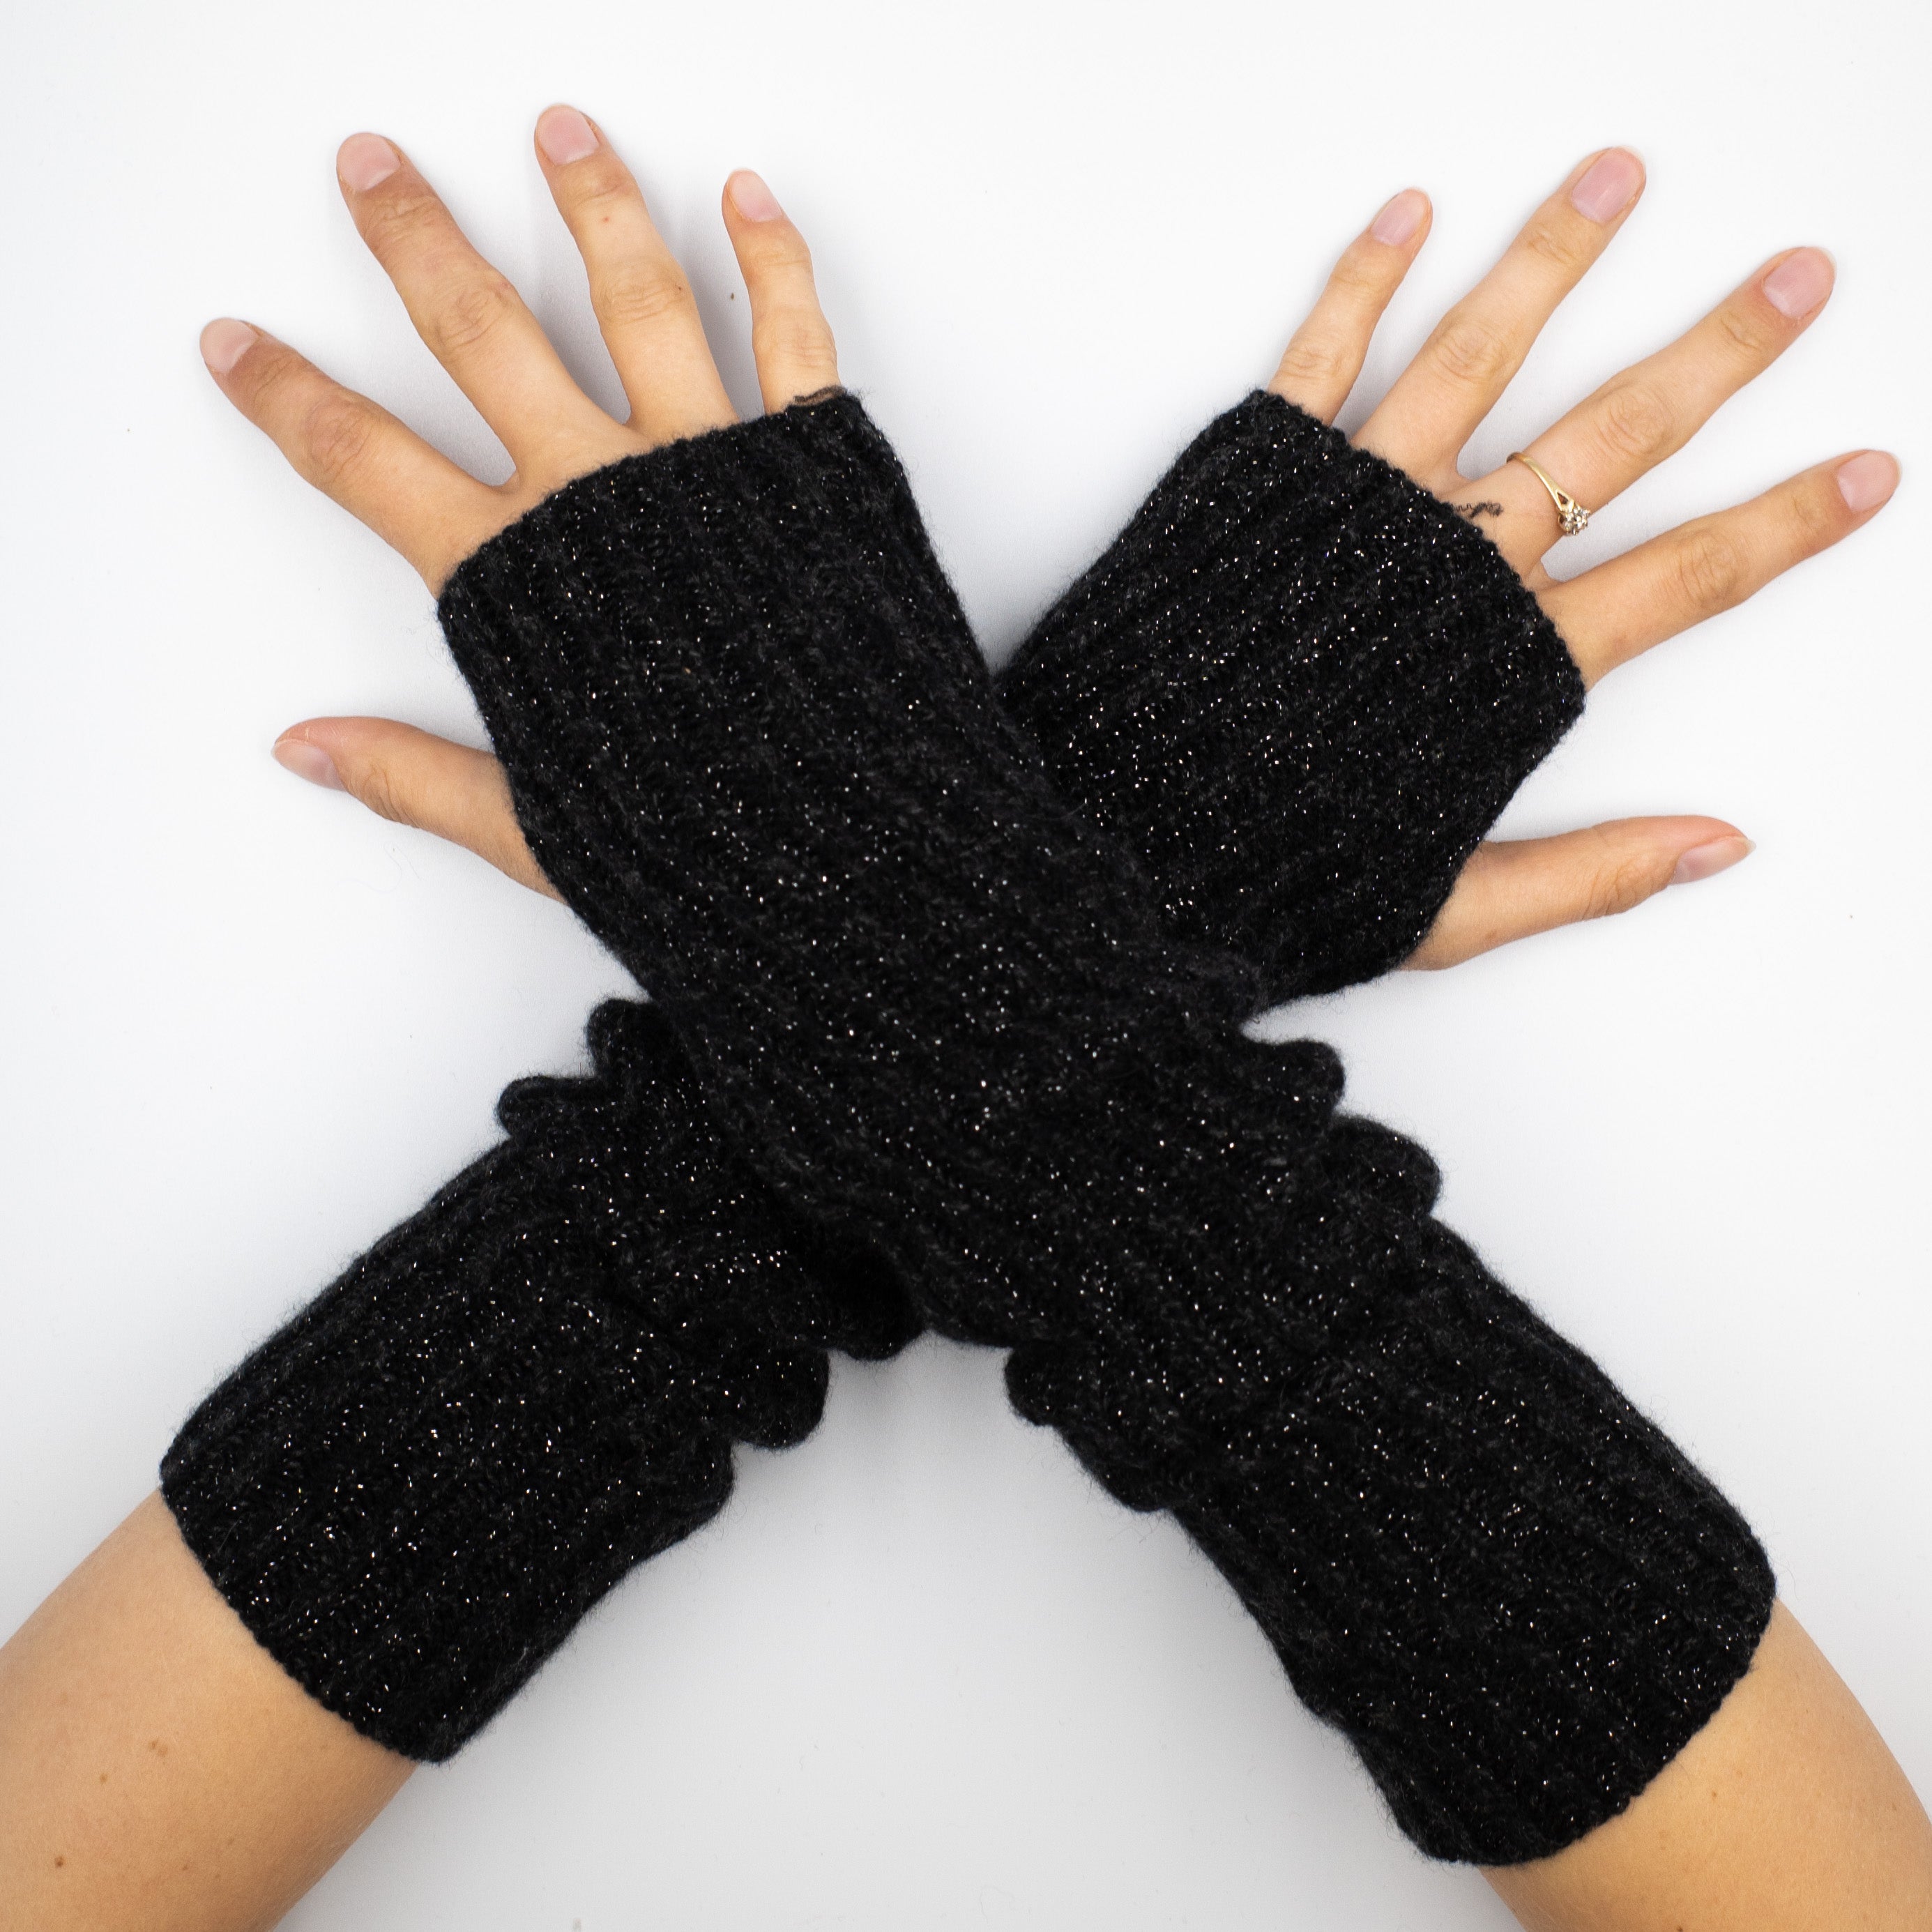 New Scottish Black Sparkly Fingerless Gloves